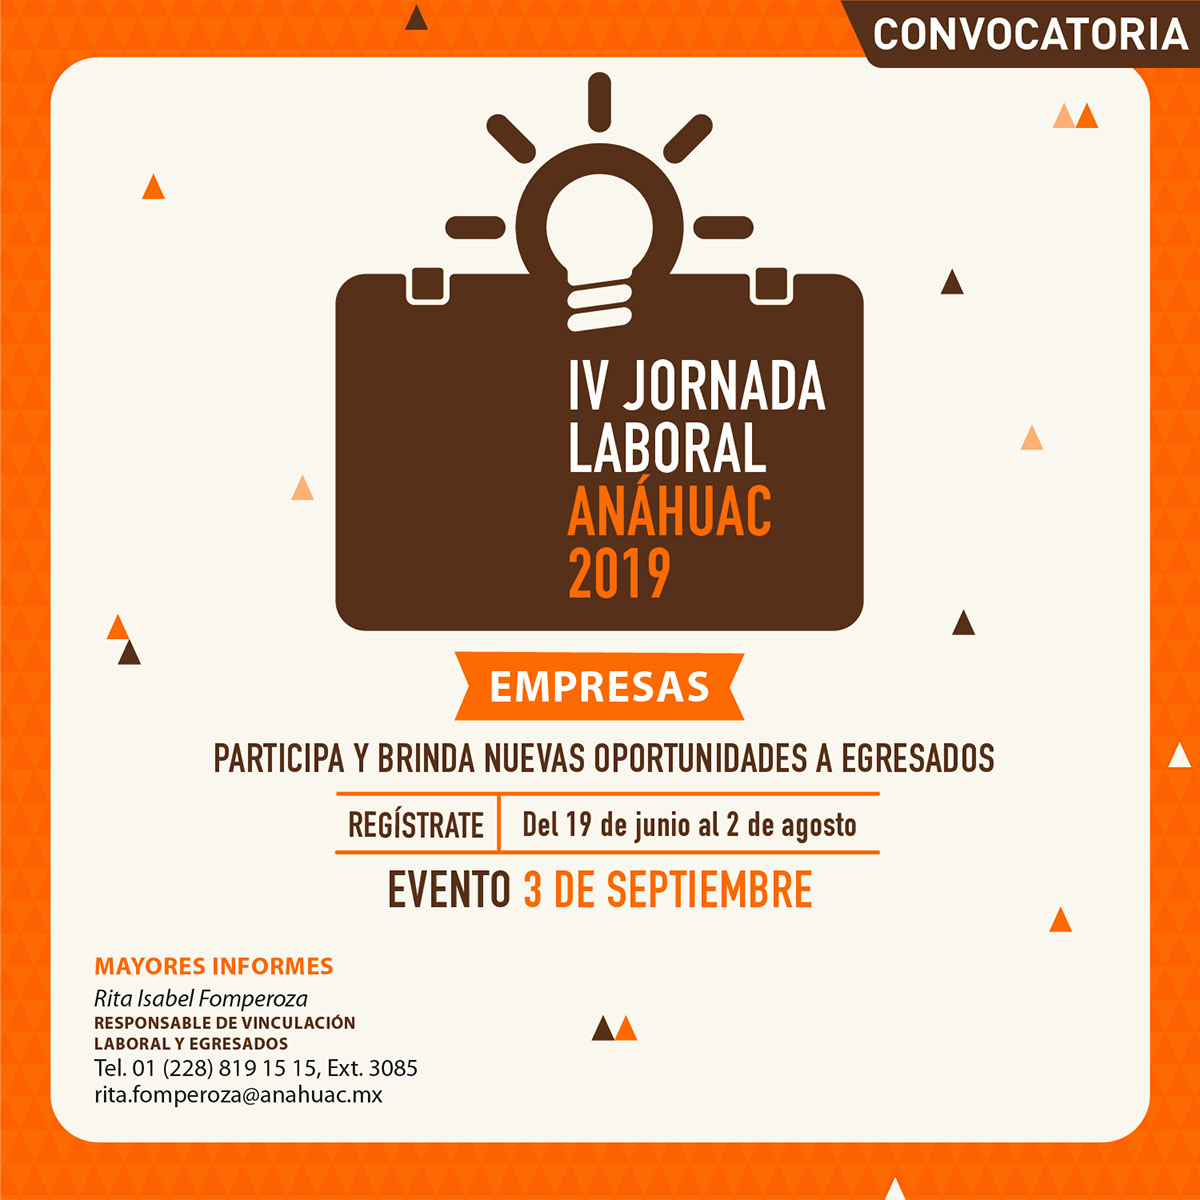 IV Jornada Laboral Anáhuac 2019: Empresas